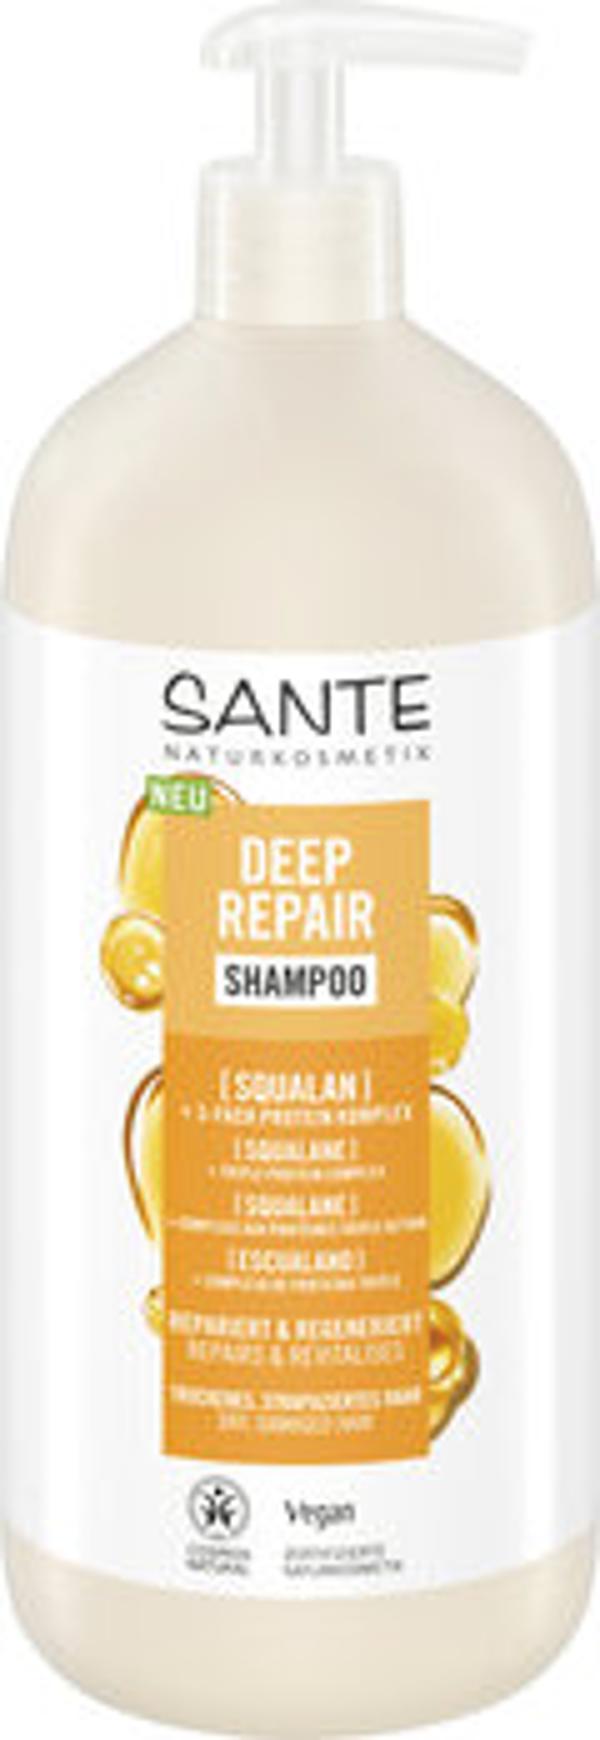 Produktfoto zu Deep Repair Shampoo Squalan 950ml